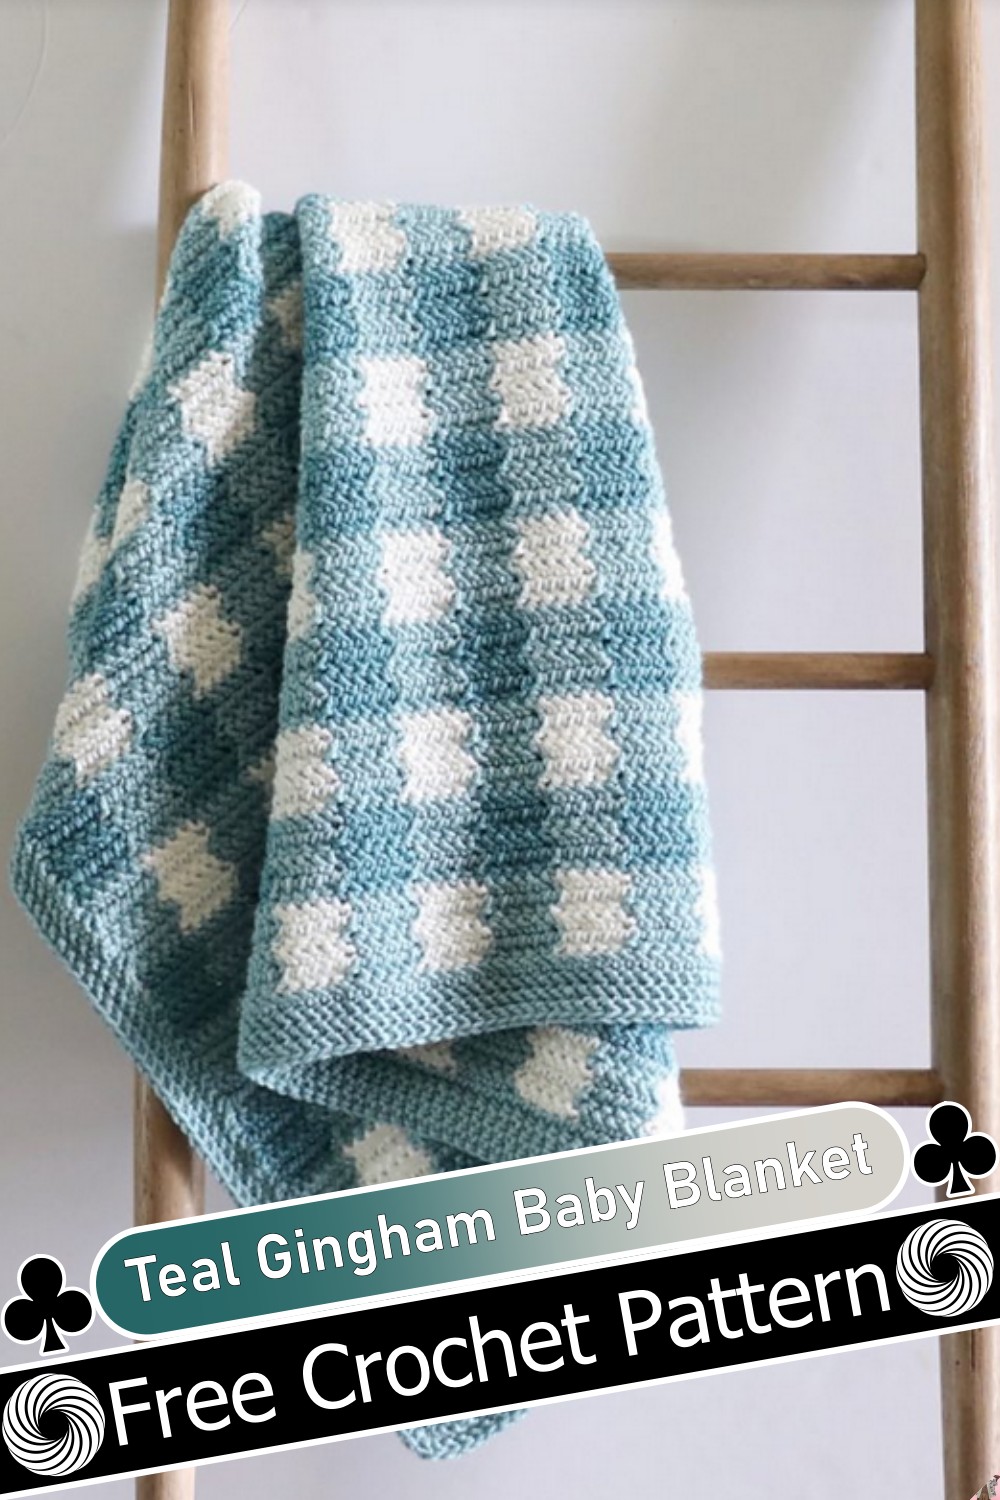 Teal Gingham Baby Blanket